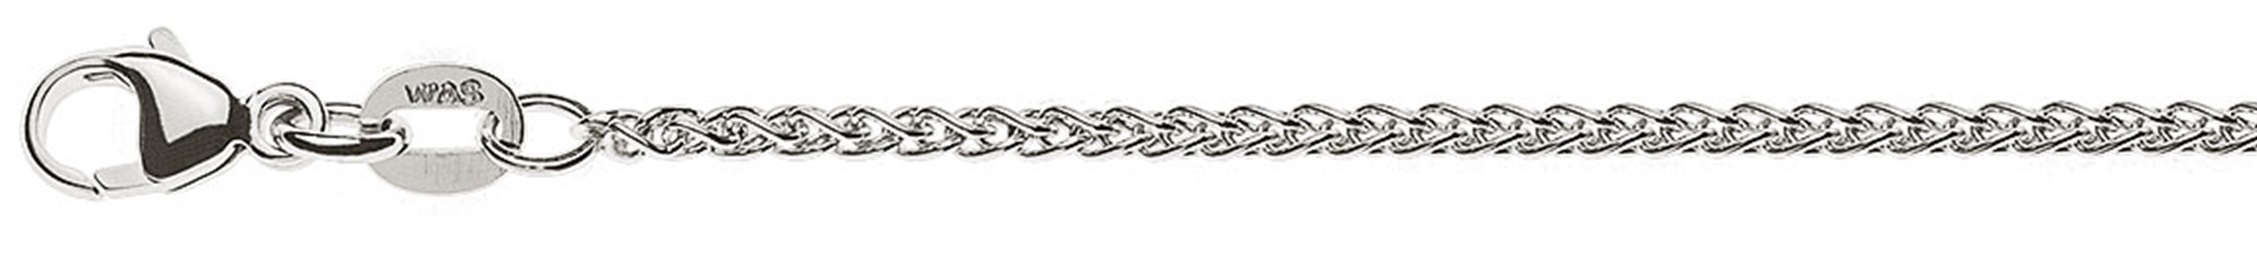 AURONOS Prestige Necklace white gold 18K cable chain 55cm 1.65mm